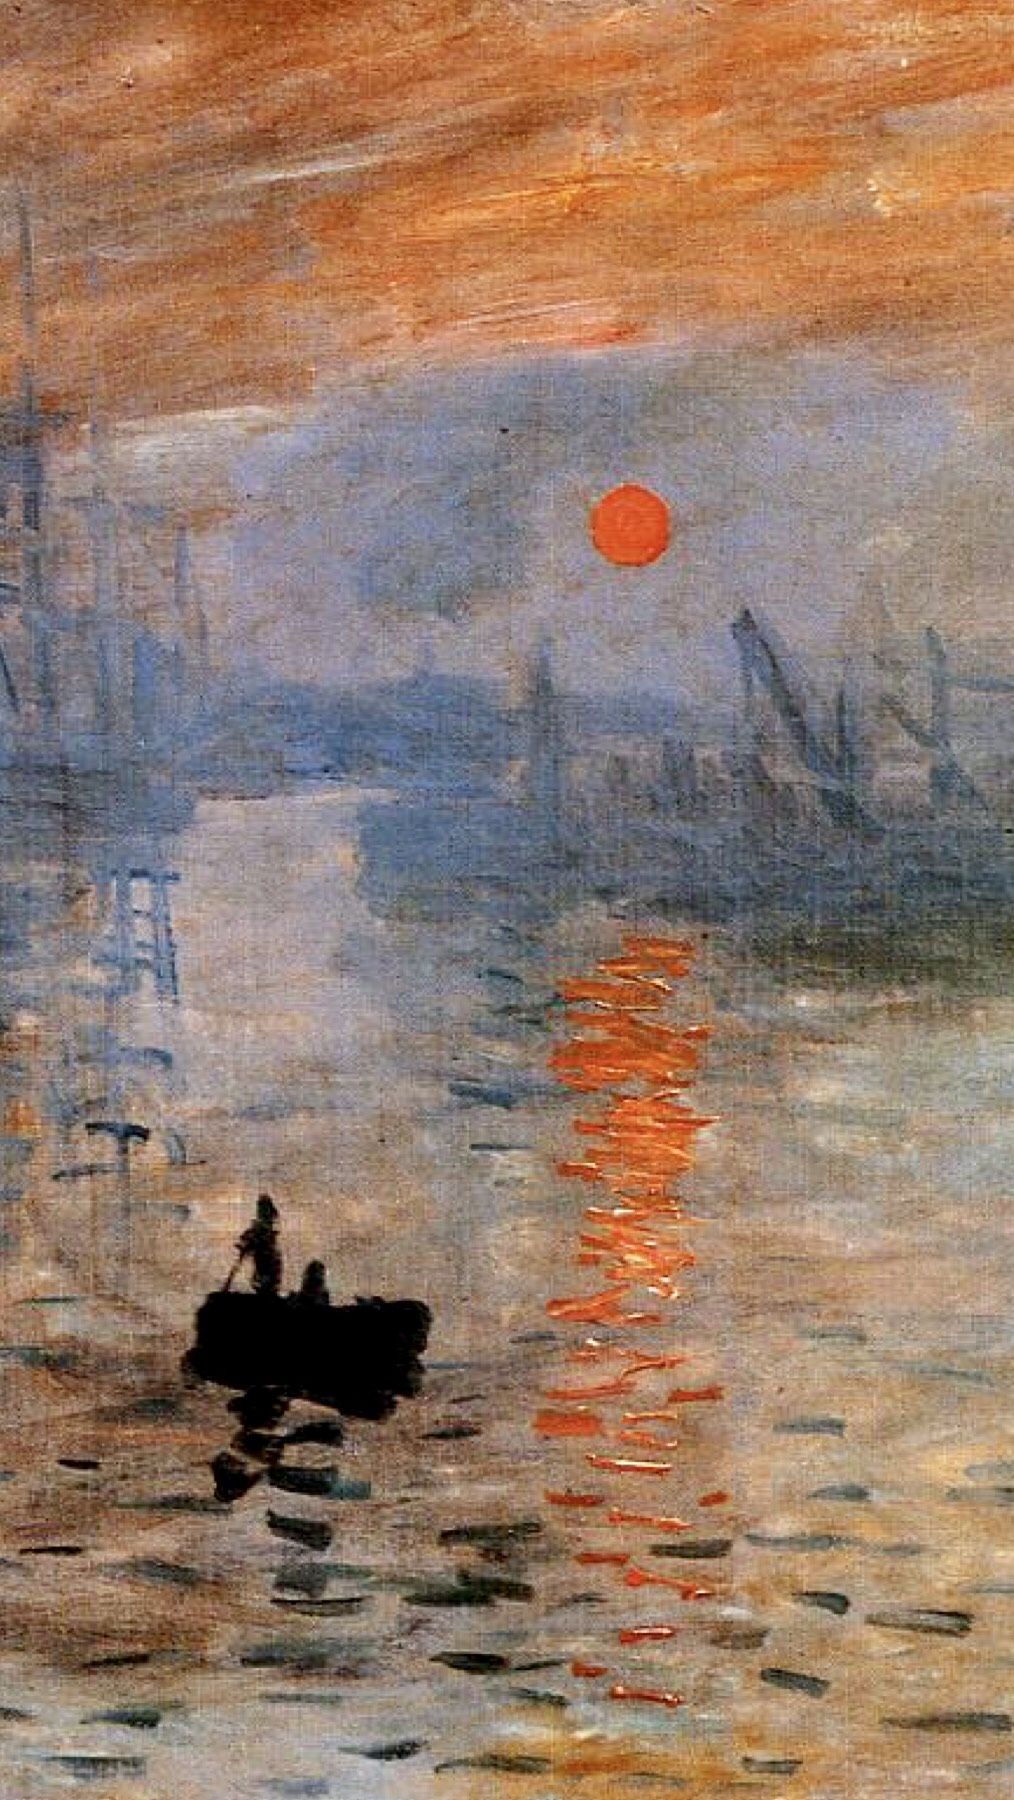 Claude Monet: Impression, Sunrise(1873)Detail. Impressionist art, Famous impressionist paintings, Claude monet art